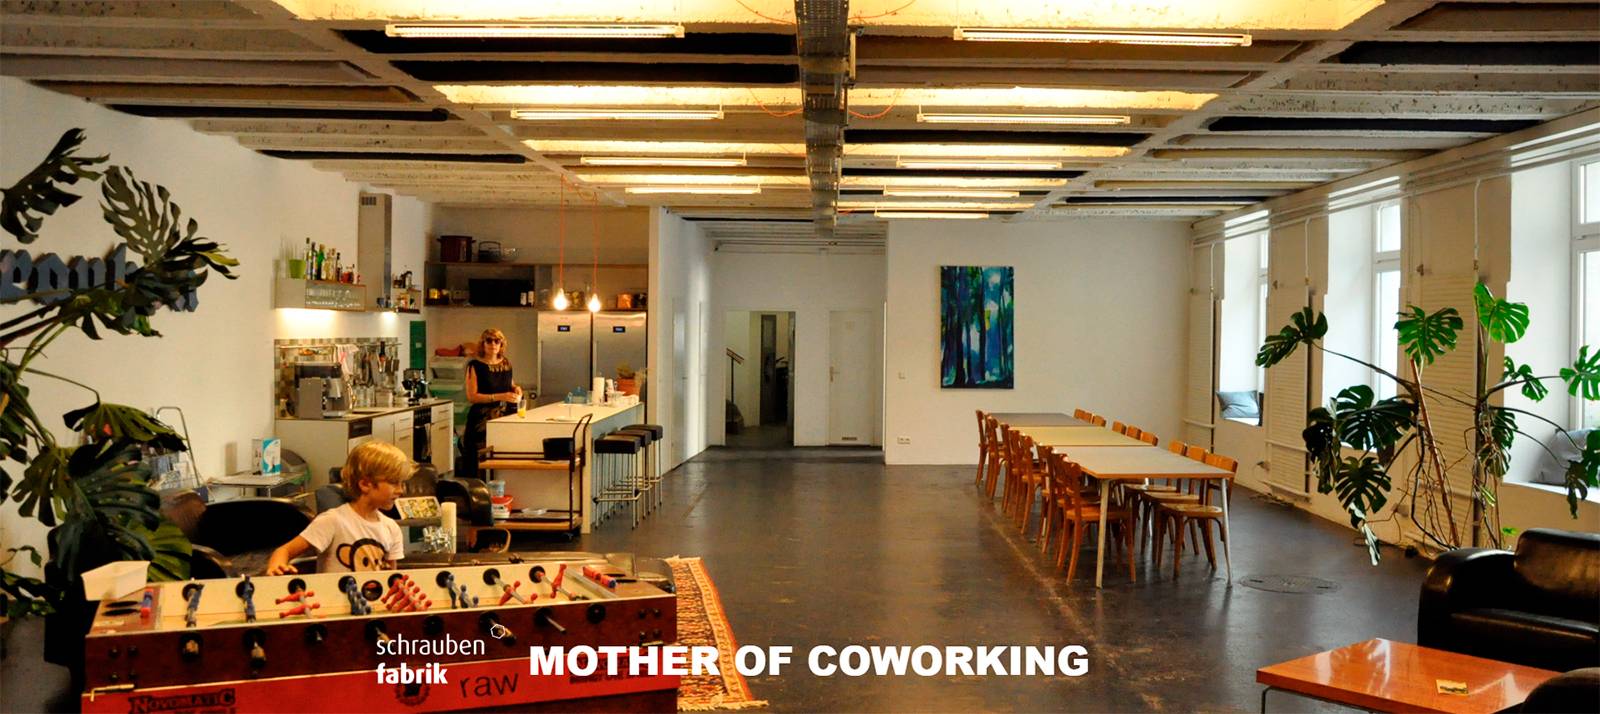 Schraubenfabrik é considerada o espaço "mãe" dos coworkings